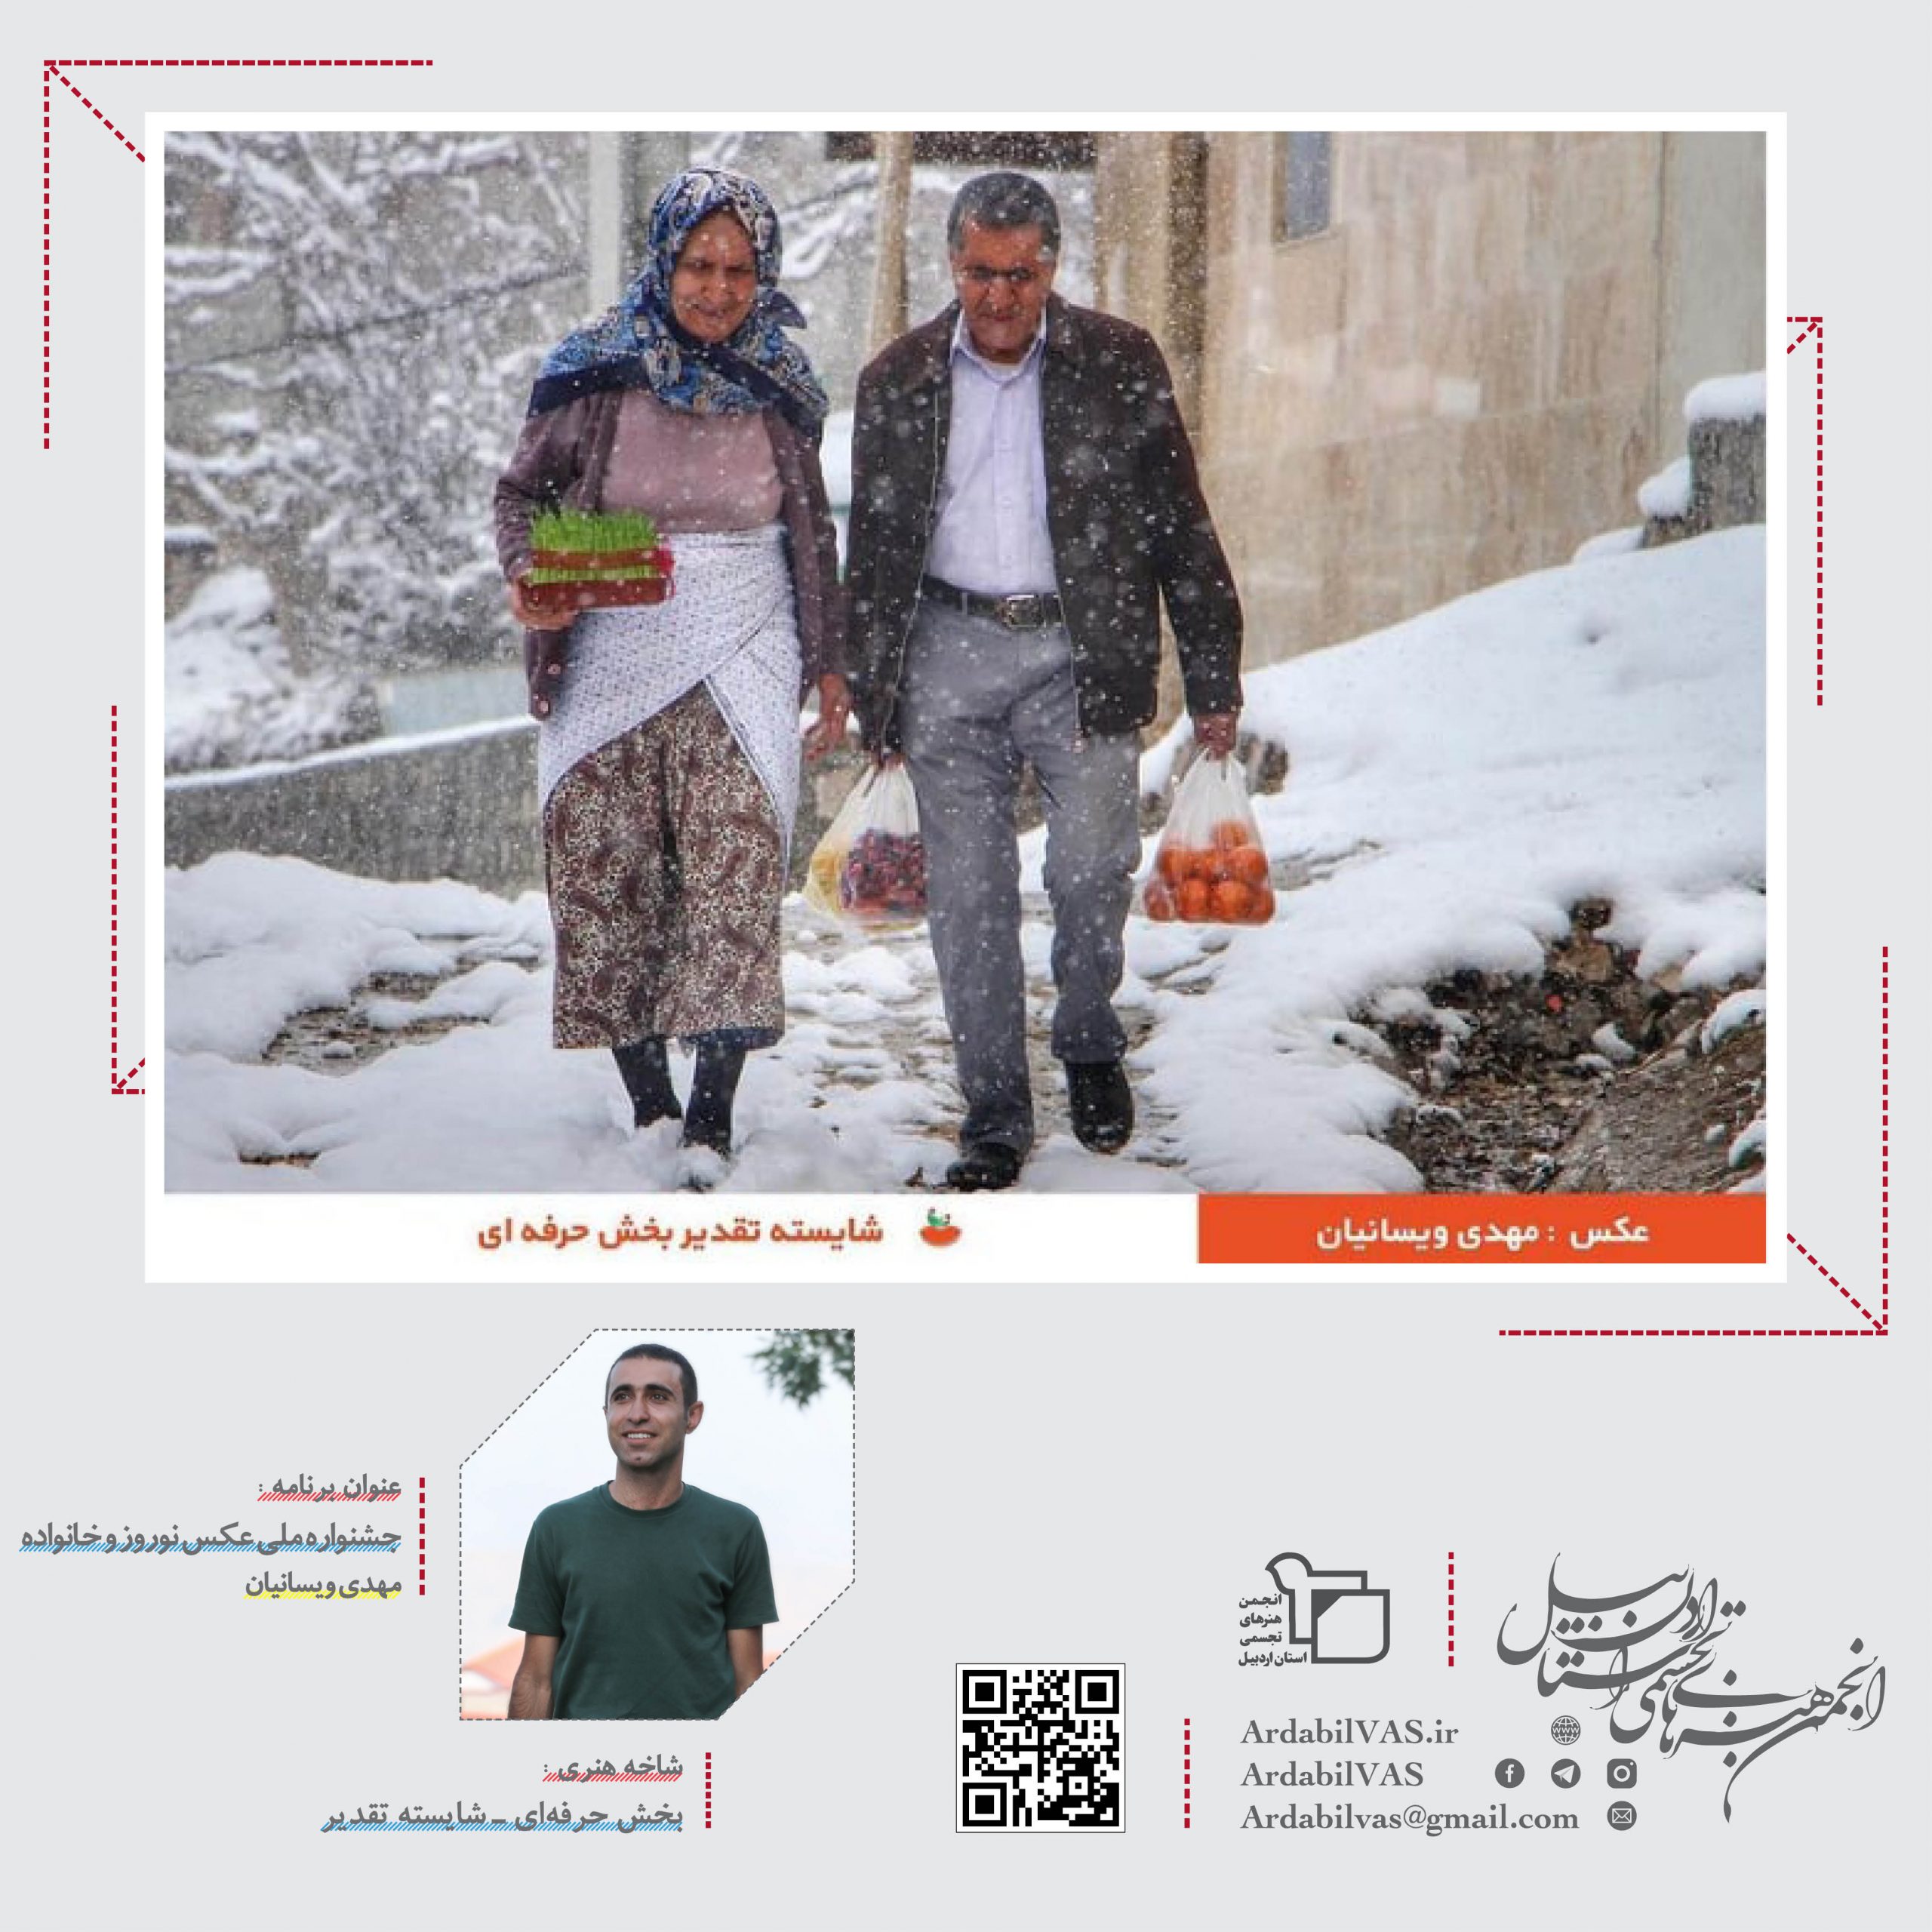 عکاسان اردبیل در اولین دوره جشنواره ملی عکس نوروز و خانواده ایرانی | انجمن هنرهای تجسمی استان اردبیل ـ جامعه تخصصی هنرهای تجسمی